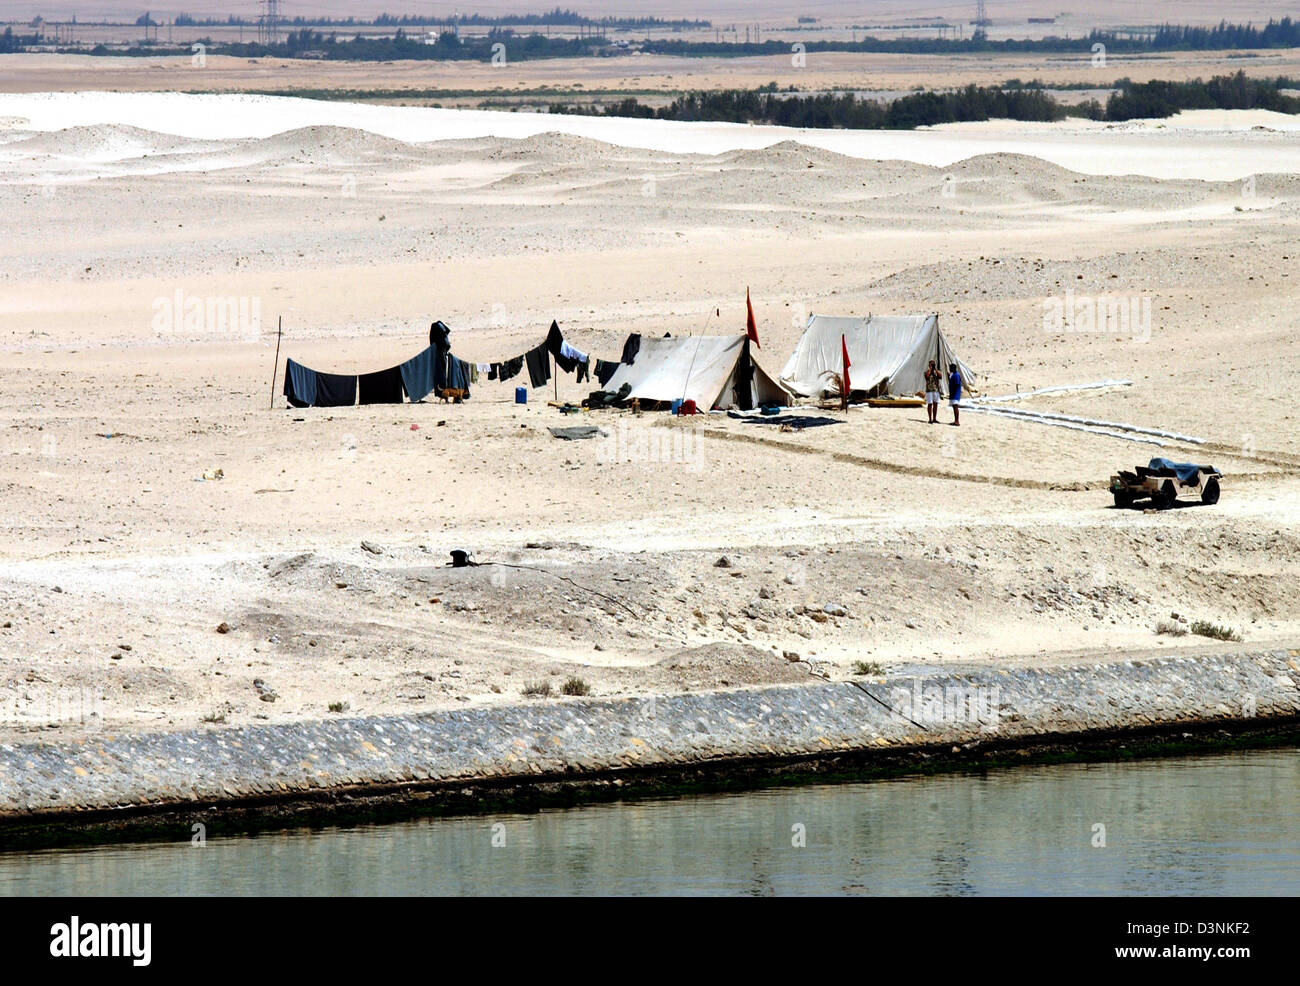 Das Bild zeigt zwei Zelte eine ägyptische Armee Post an den Suezkanal, Ägypten, 17. April 2006. 195 Kilometer Suezkanal verbindet das Mittelmeer mit dem Roten Meer über den Golf von Suez. Foto: Horst Ossinger Stockfoto